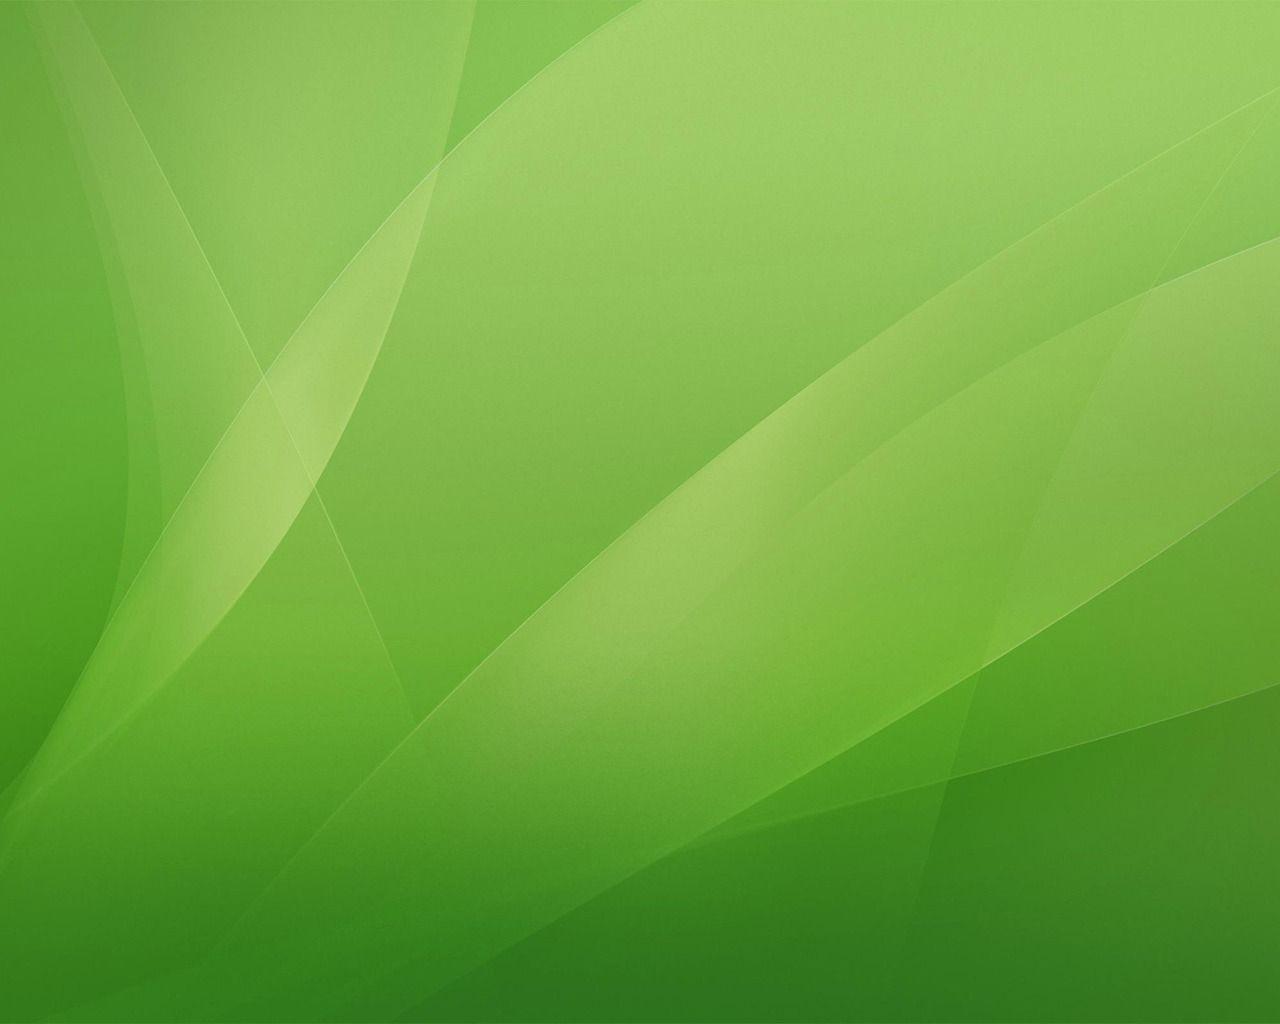 1280x1024 Hình nền màu xanh lá cây Hình nền trừu tượng Hình nền khác ở định dạng jpg miễn phí